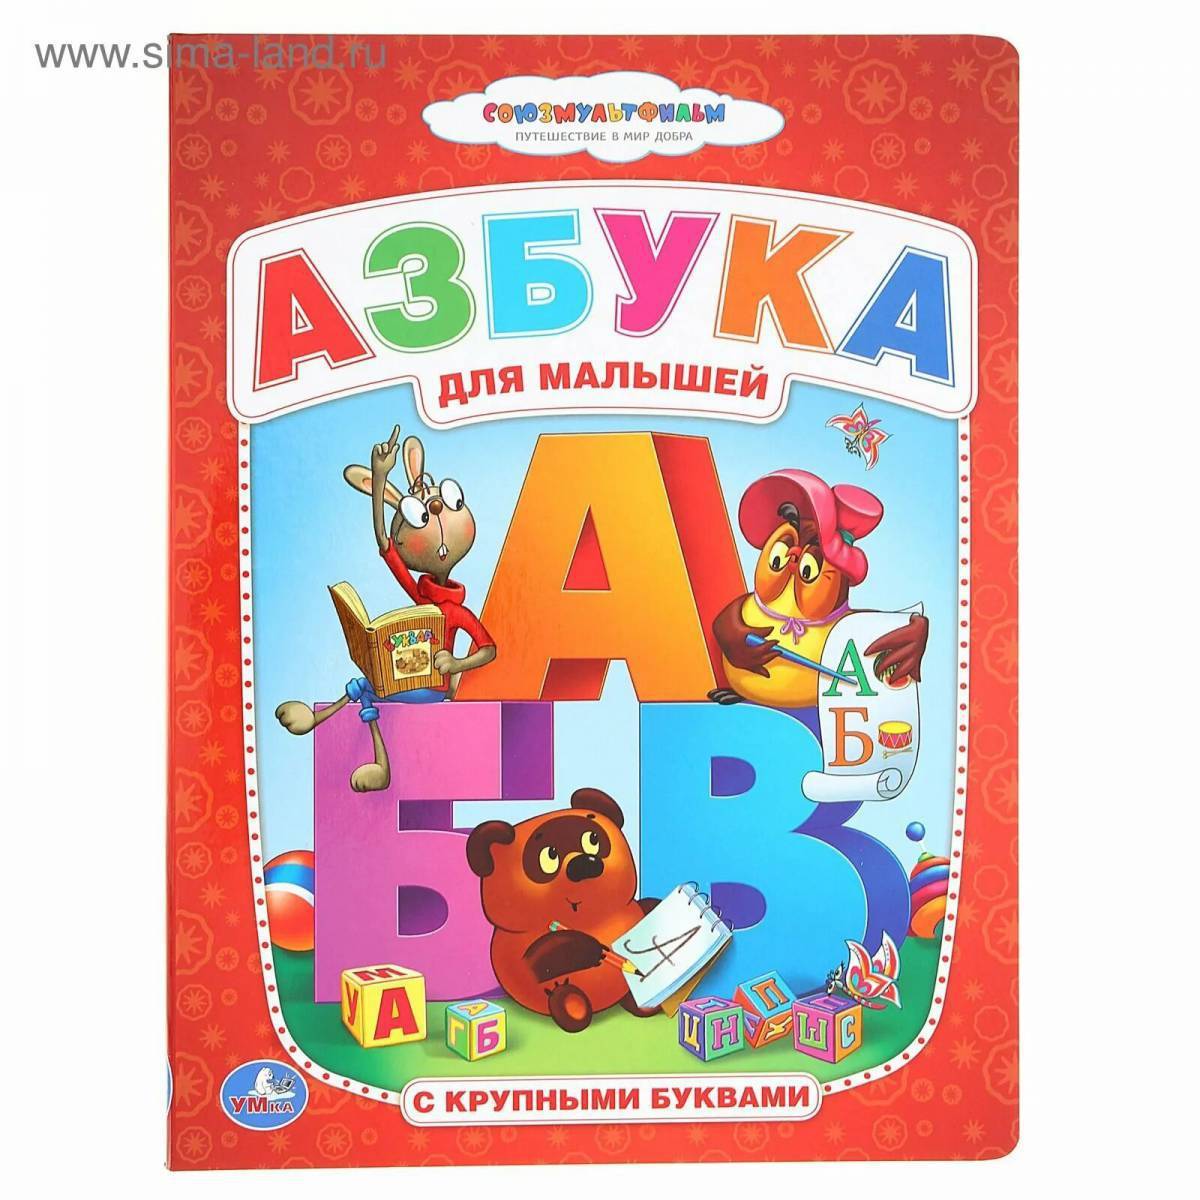 Книжка "Азбука". Азбука для малышей книга. Азбука (обложка). Алфавит книга для детей. Детские книги азбука